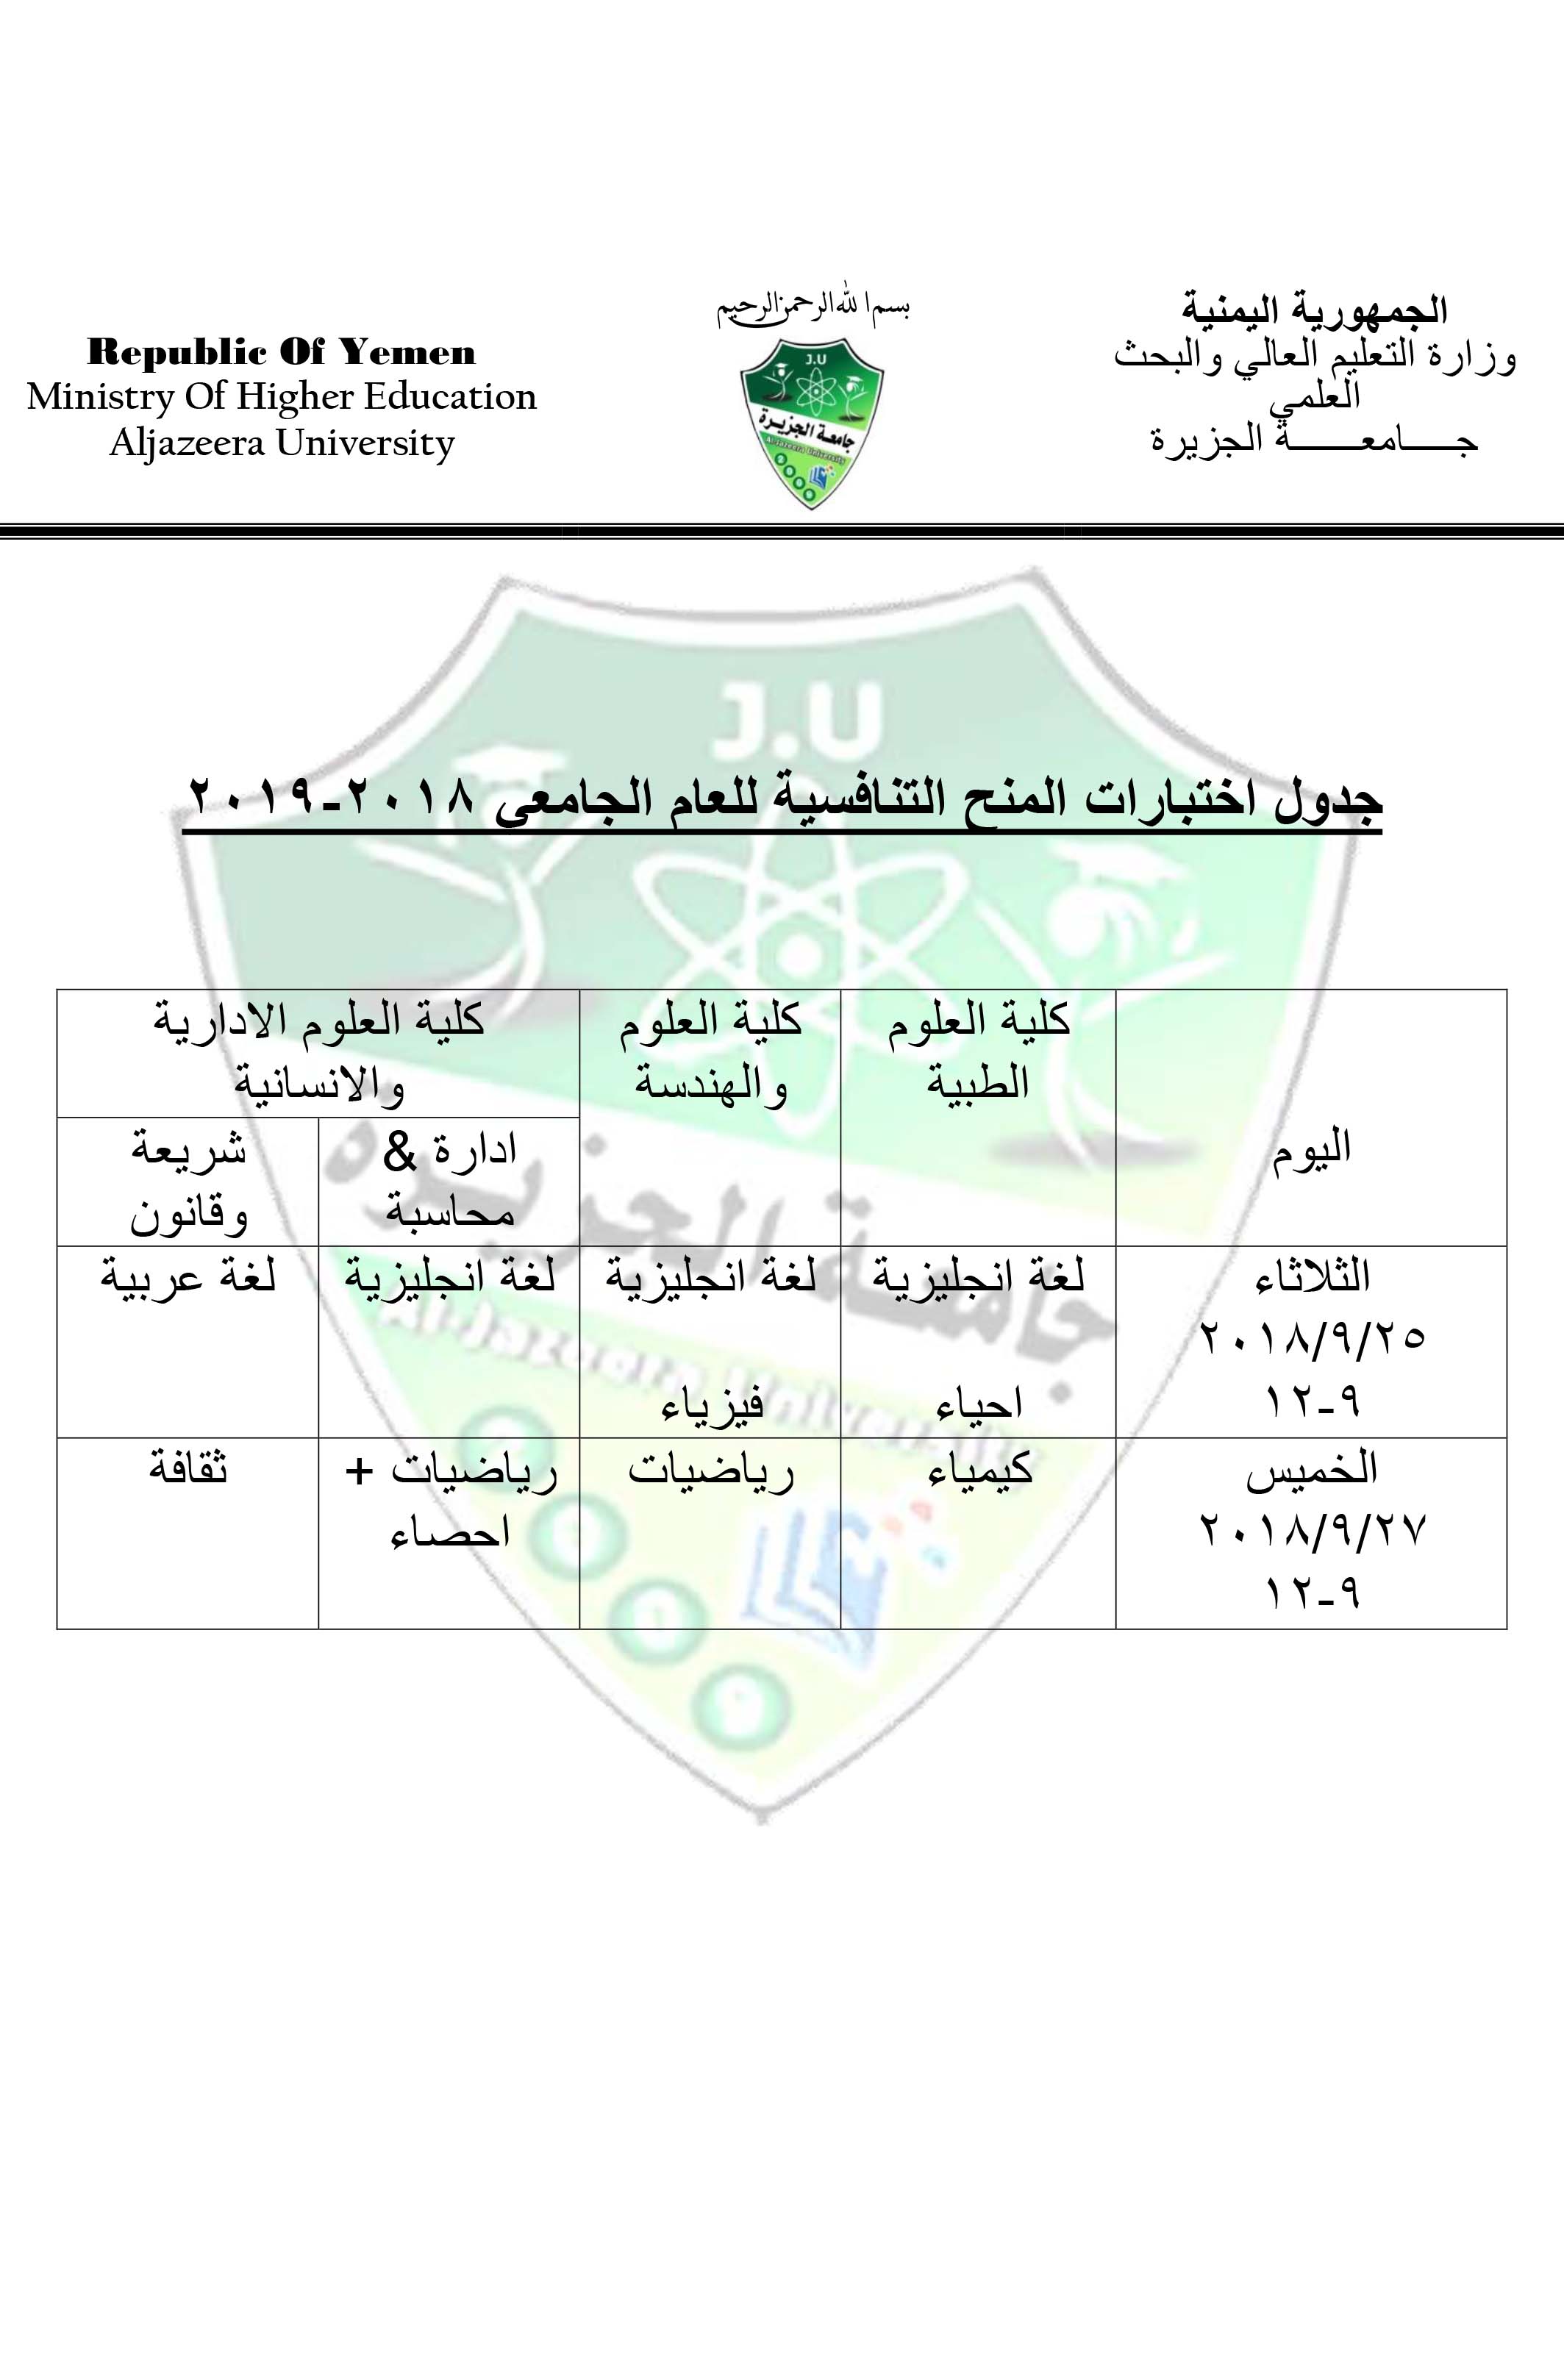 جدول الاختبارات التنافسية لمنح جامعة الجزيرة للعام الجامعي 2018-2019